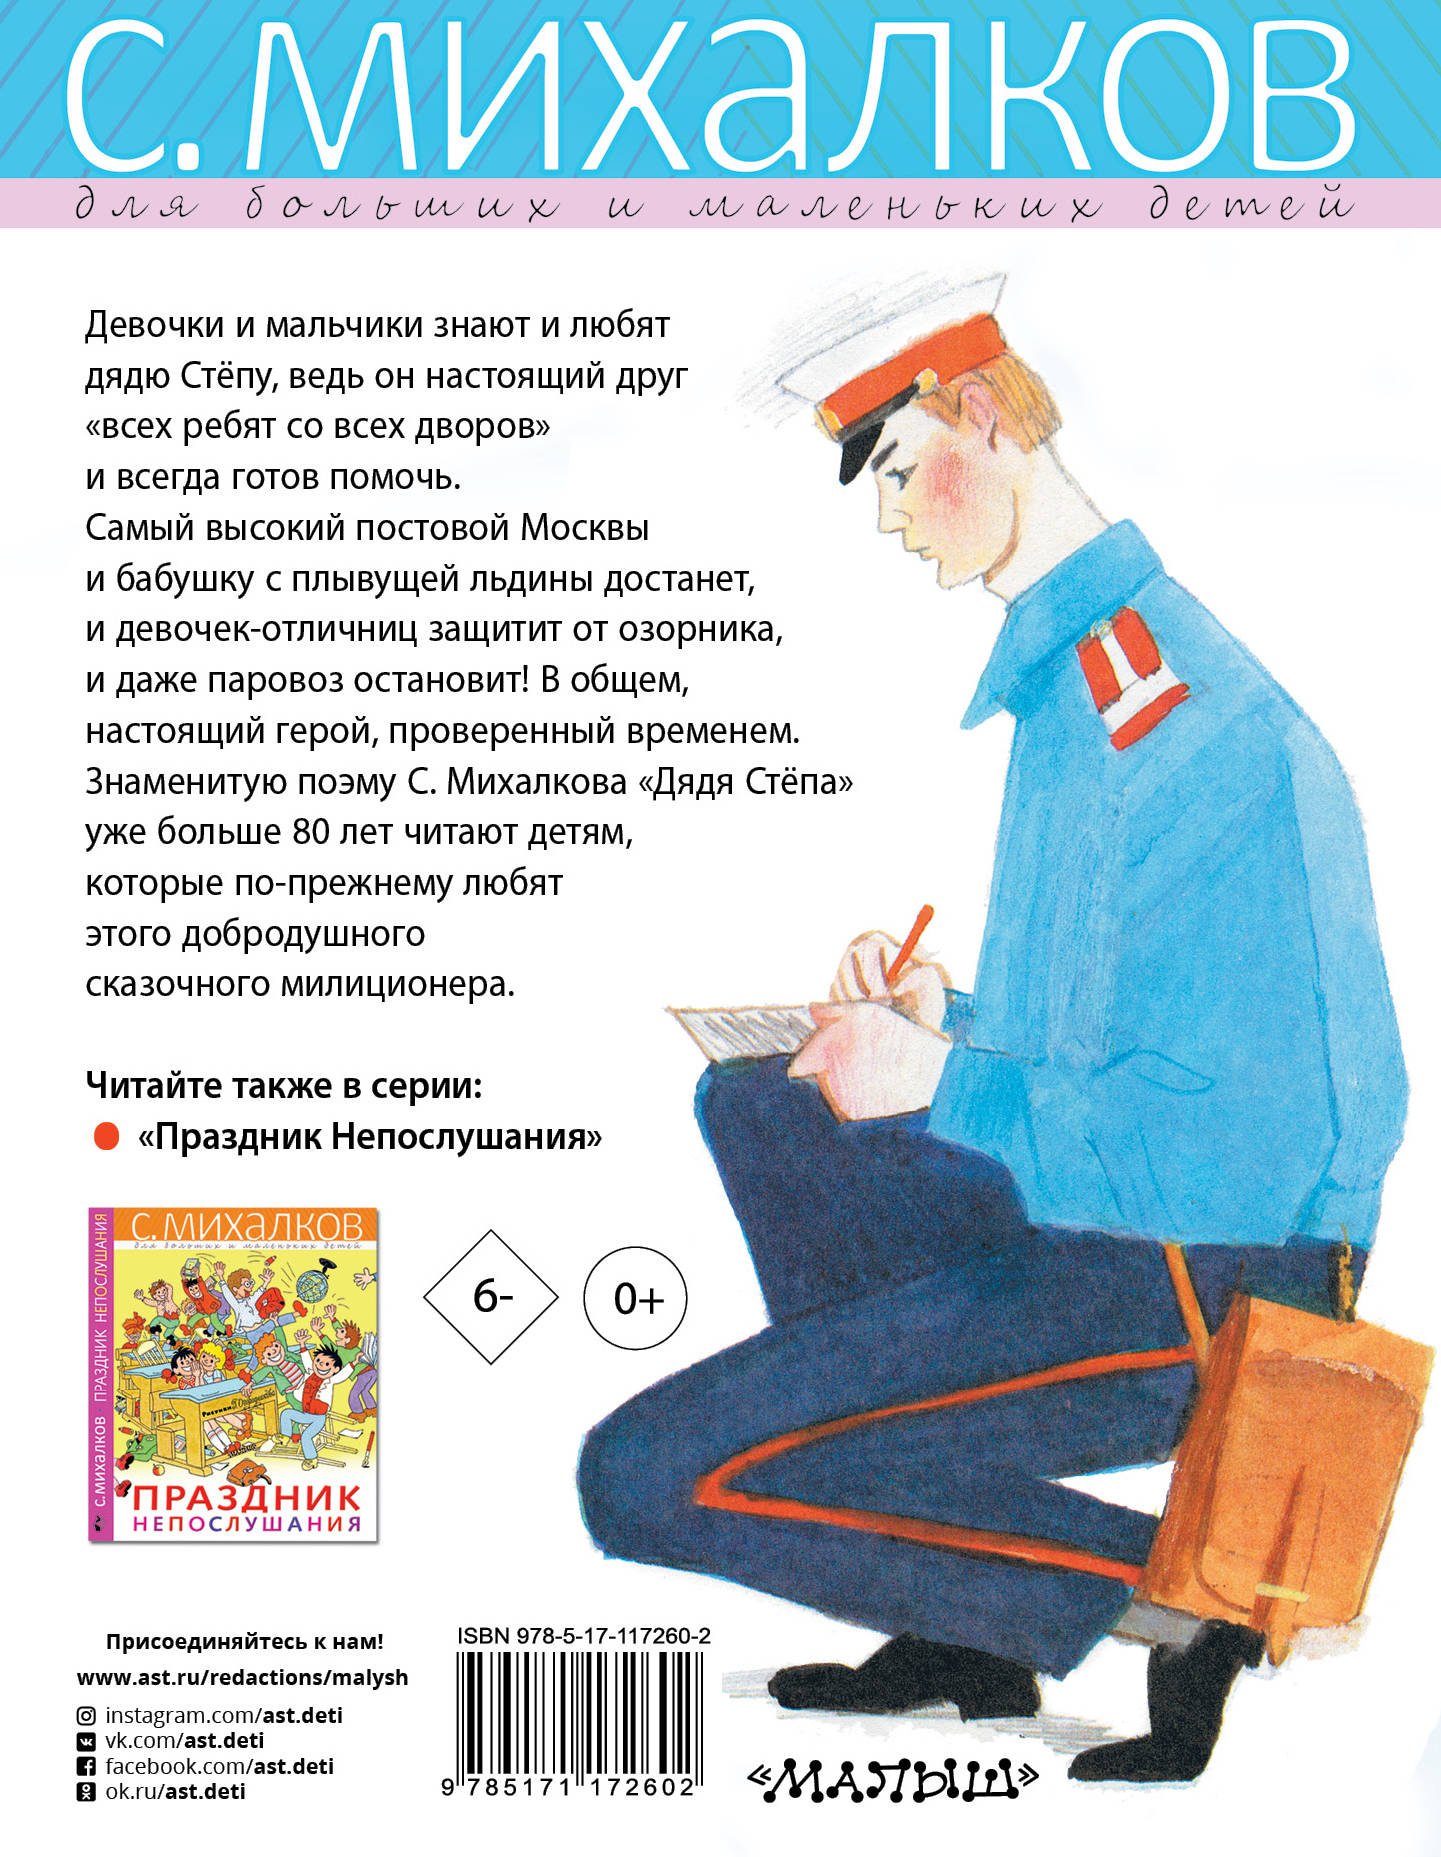 Милиционер книга. Иллюстрации к дядя Степа Михалкова для детей.